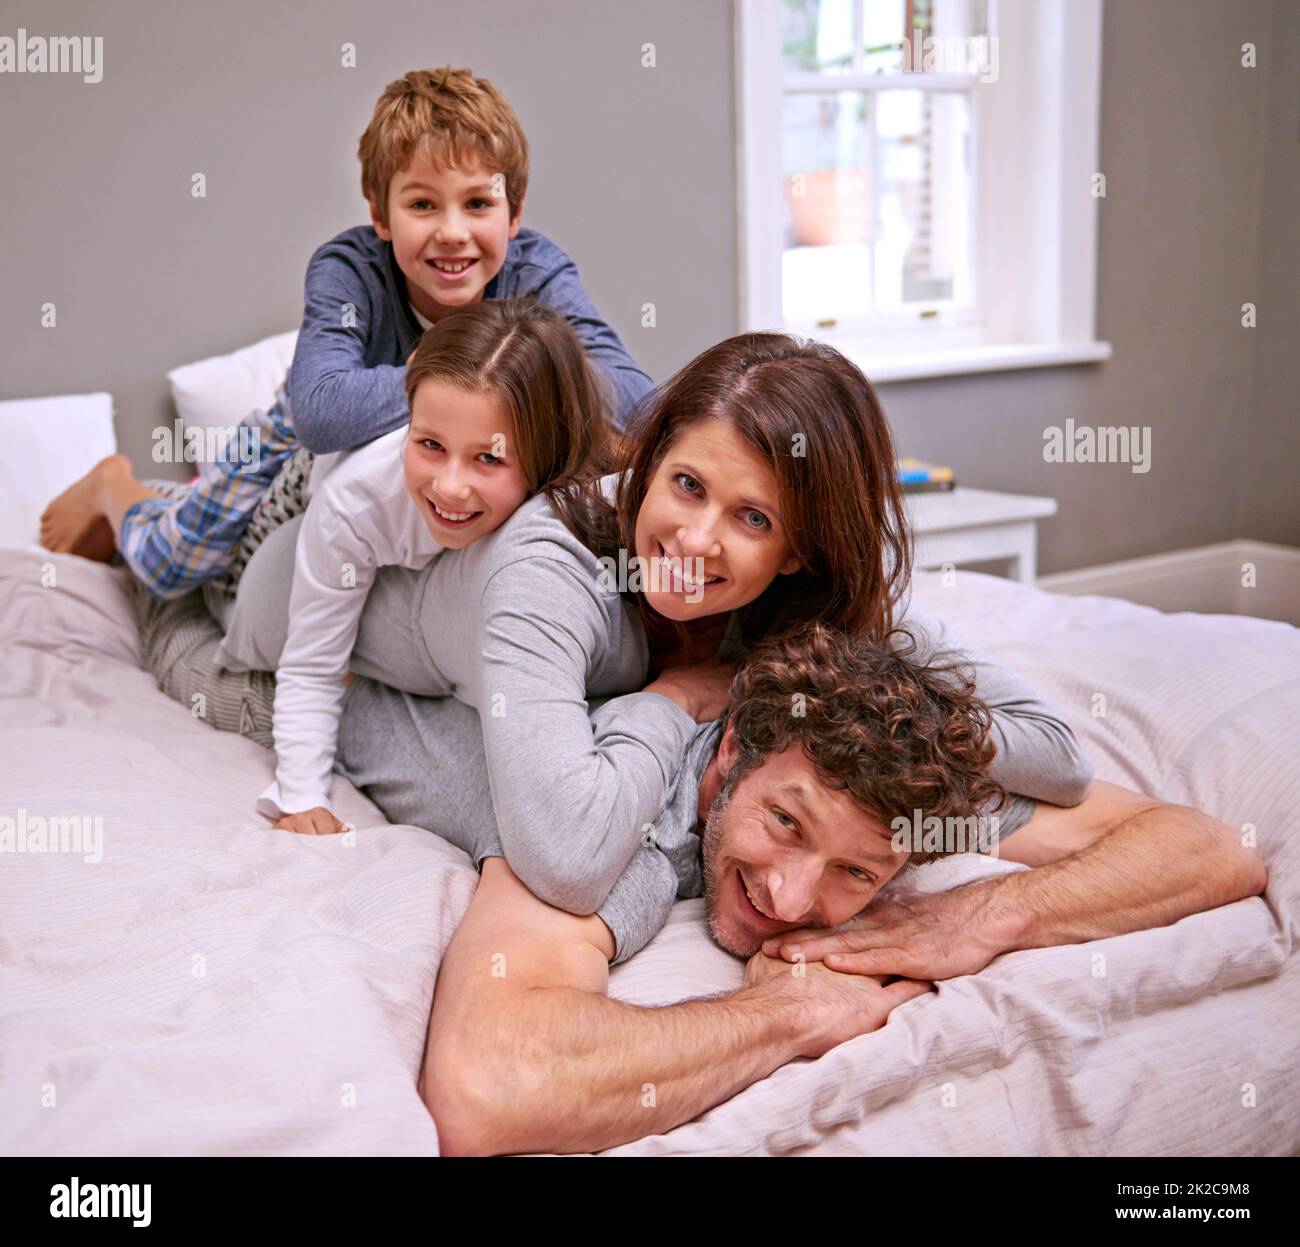 Zeit mit der Familie. Aufnahme einer glücklichen vierköpfigen Familie im Schlafzimmer. Stockfoto